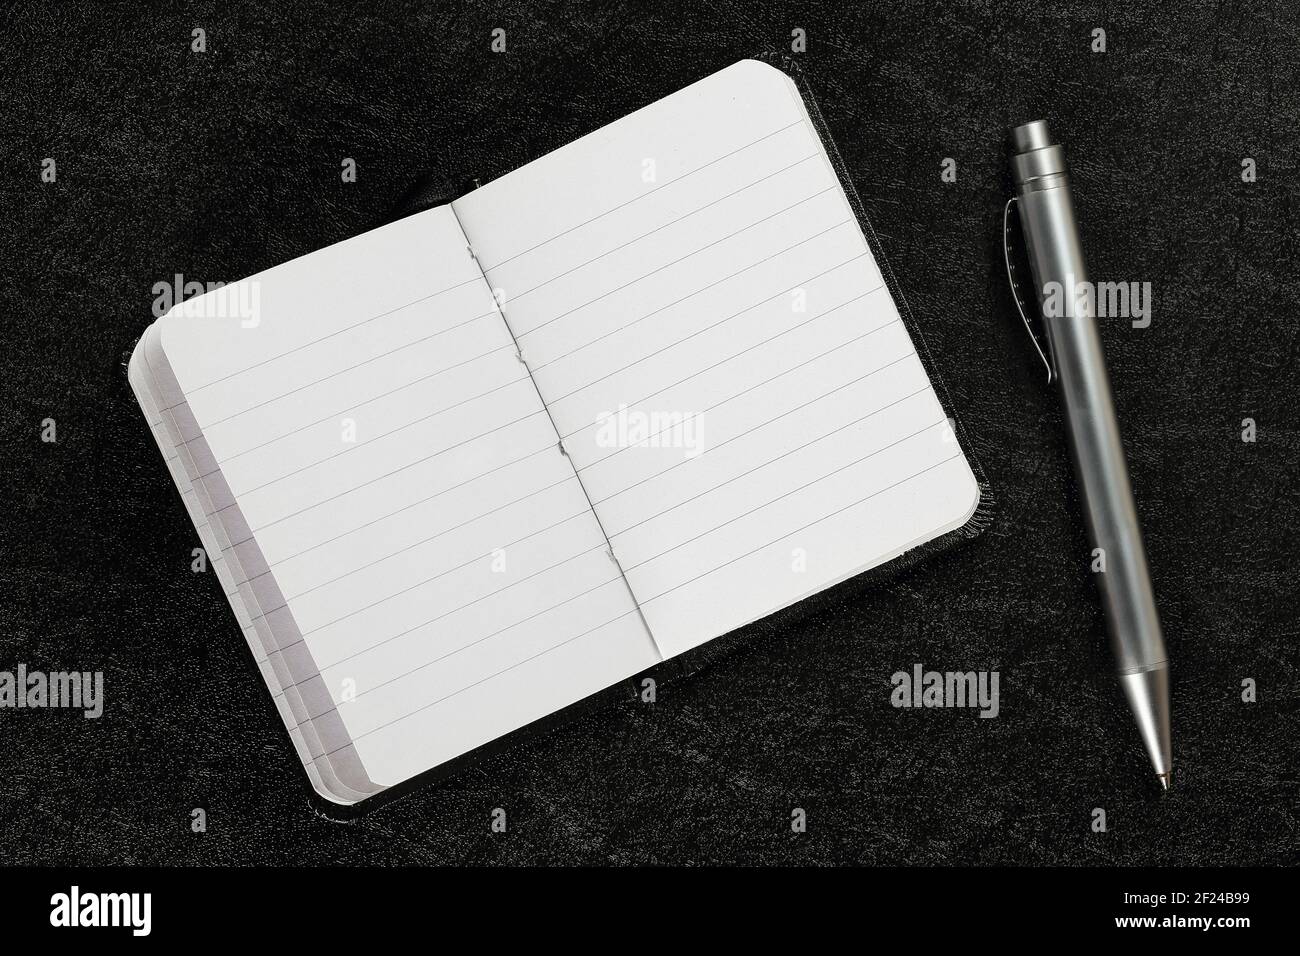 aprire e lasciare vuoto il libro dell'agenda con la penna sulla superficie nera Foto Stock